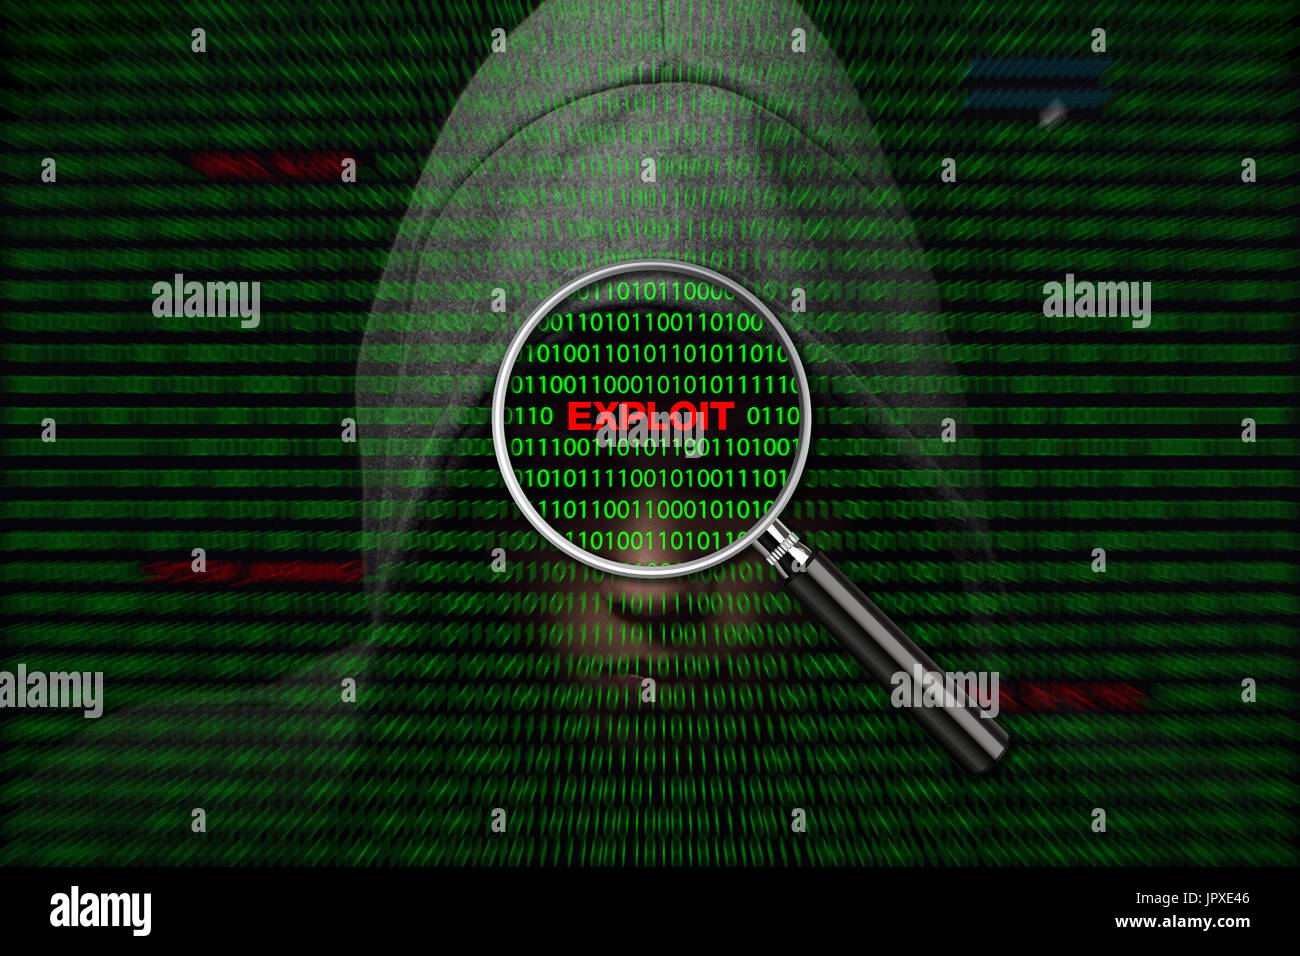 Hacker a través de una pantalla con código binario y explotar los mensajes de advertencia Foto de stock